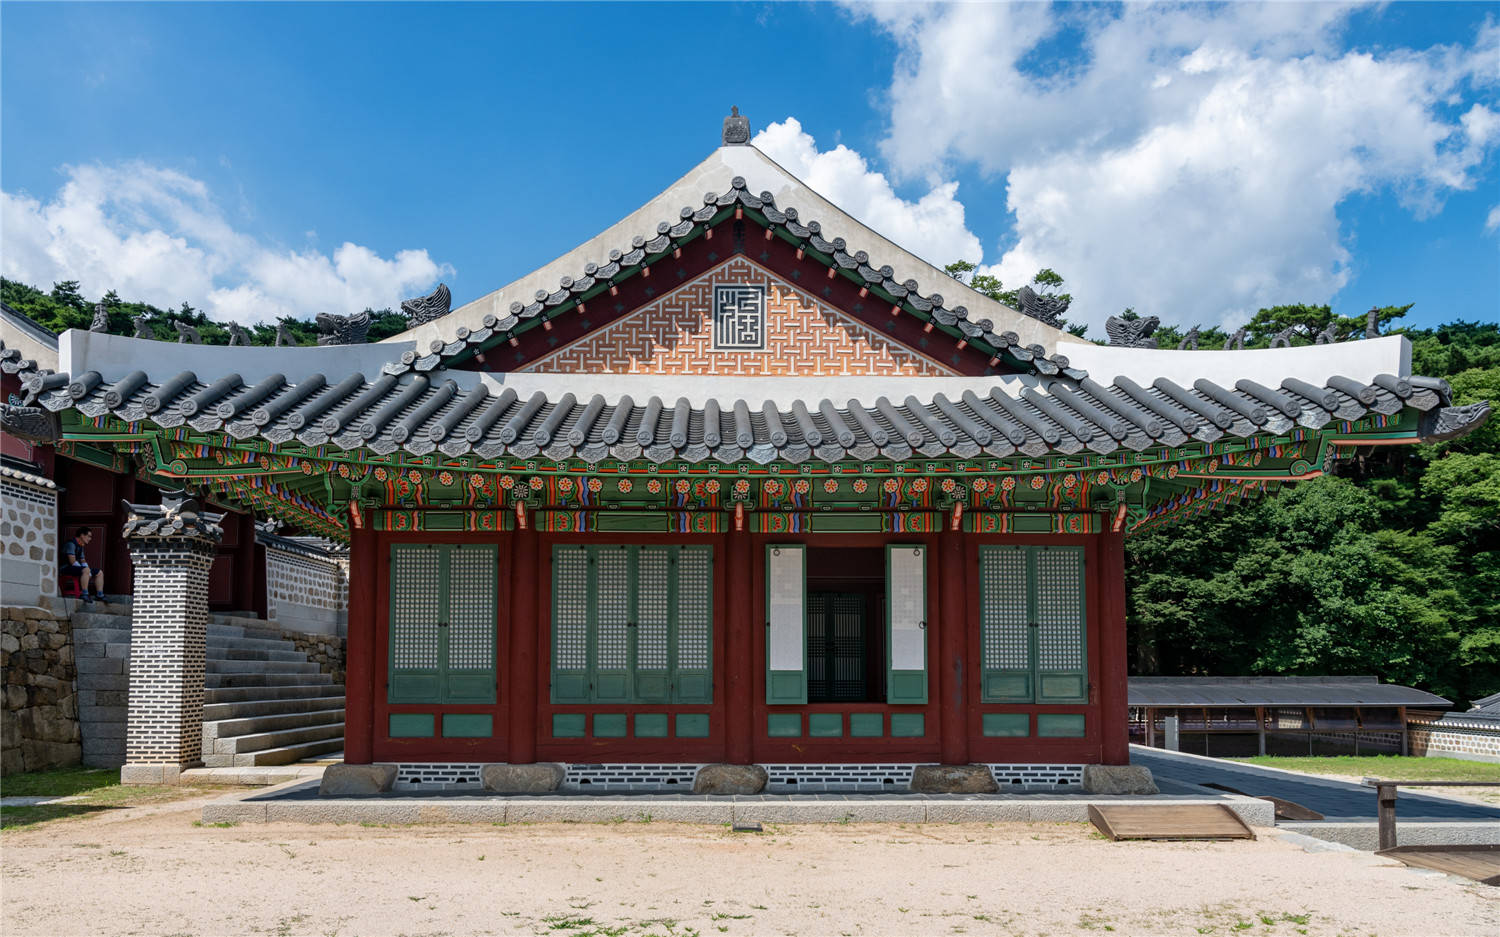 原创2千多年的韩国古城：充满着浓厚的中国味道，连牌匾都是汉字